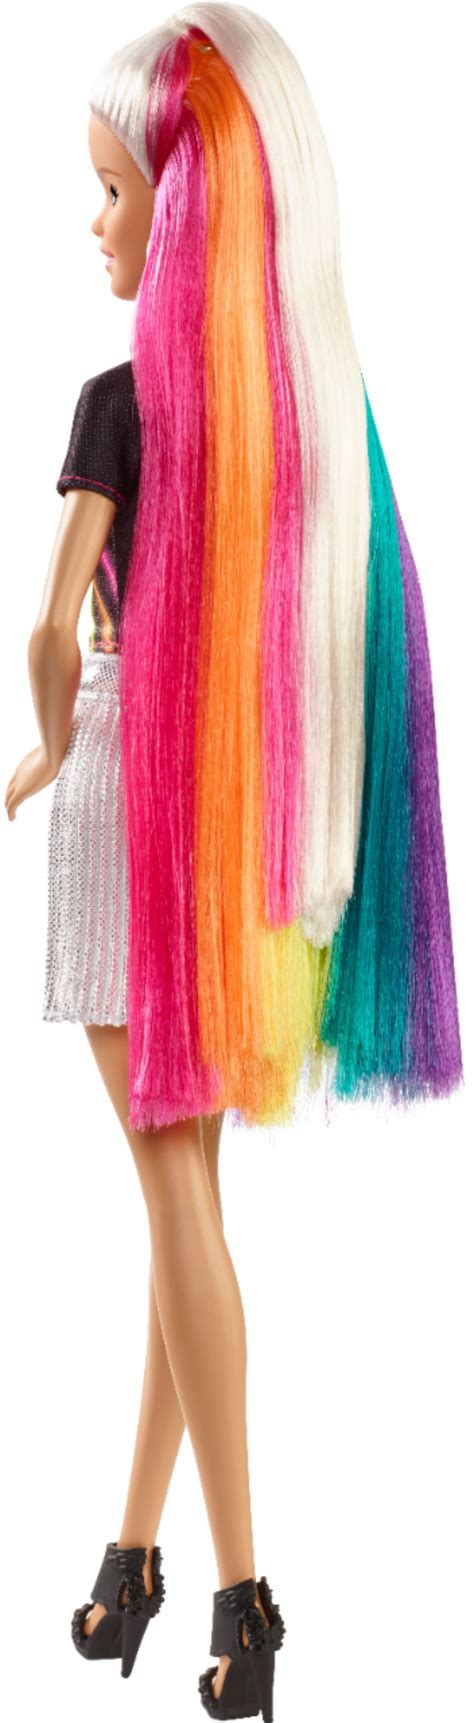 Best Buy Barbie Rainbow Sparkle Hair Doll Fxn95